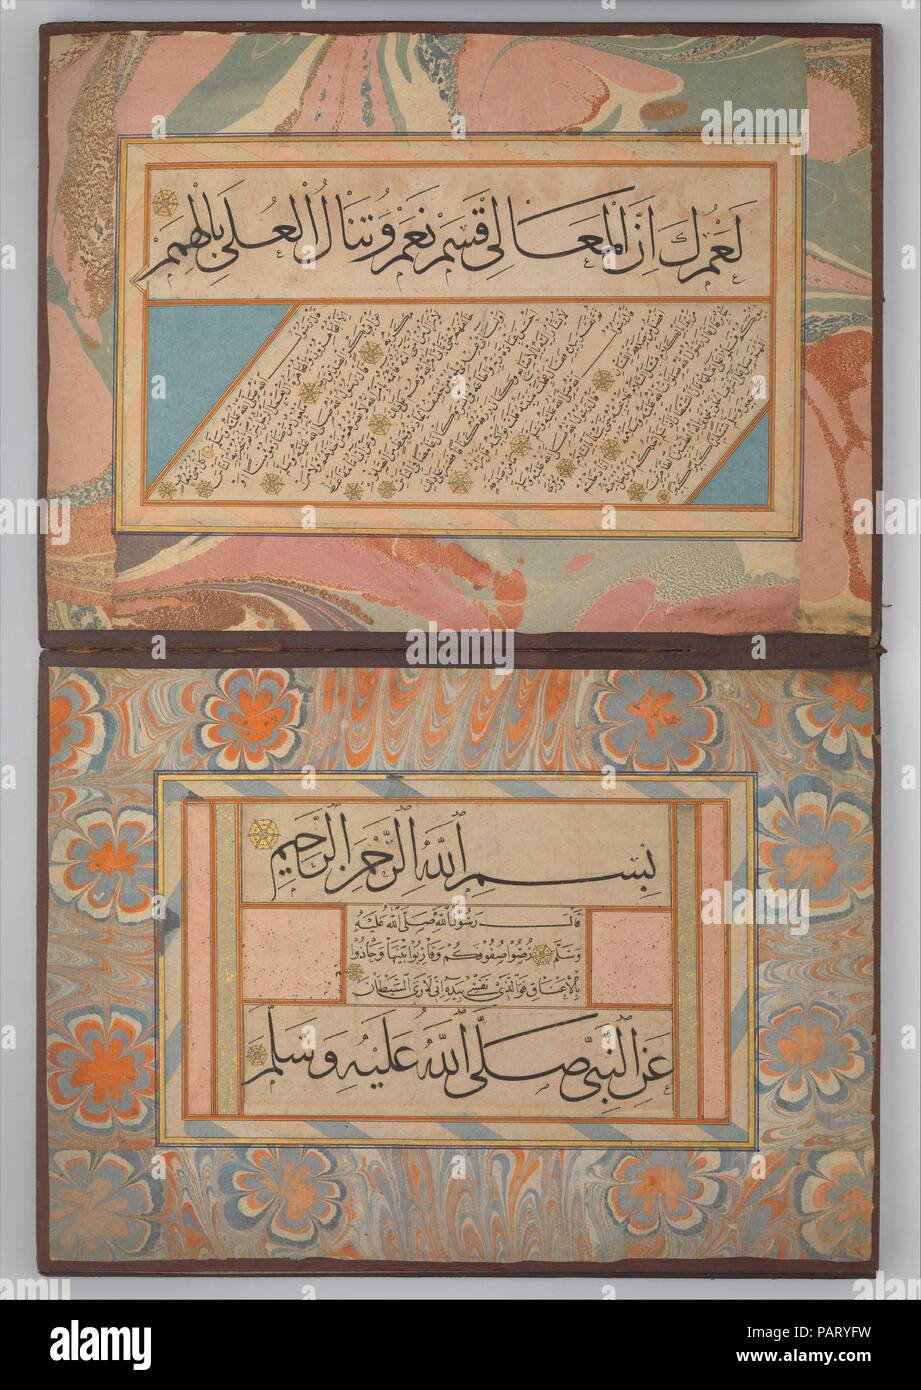 Album di Calligraphies tra cui la poesia e la tradizione profetica (Hadith). Calligrapher: Shaikh Hamdullah ibn Mustafa Dede (d. 1520). Dimensioni: Ht. 12 5/8 in. (32,1 cm) W. 9 3/8 in. (23,8 cm). Data: ca. 1500. Questo album contiene i campioni scritto da Shaykh Hamdullah, il più celebre calligrafo Ottomano. Il testo deriva dal Hadith, la compilazione del Profeta Muhammad le parole e le opere che è una fonte importante per il morale e orientamento giuridico nella tradizione islamica. Su ogni pagina, diverse linee di un piccolo script (naskh) sono incorniciate da uno o due linee in uno script di dimensioni maggiori (thuluth o muh Foto Stock